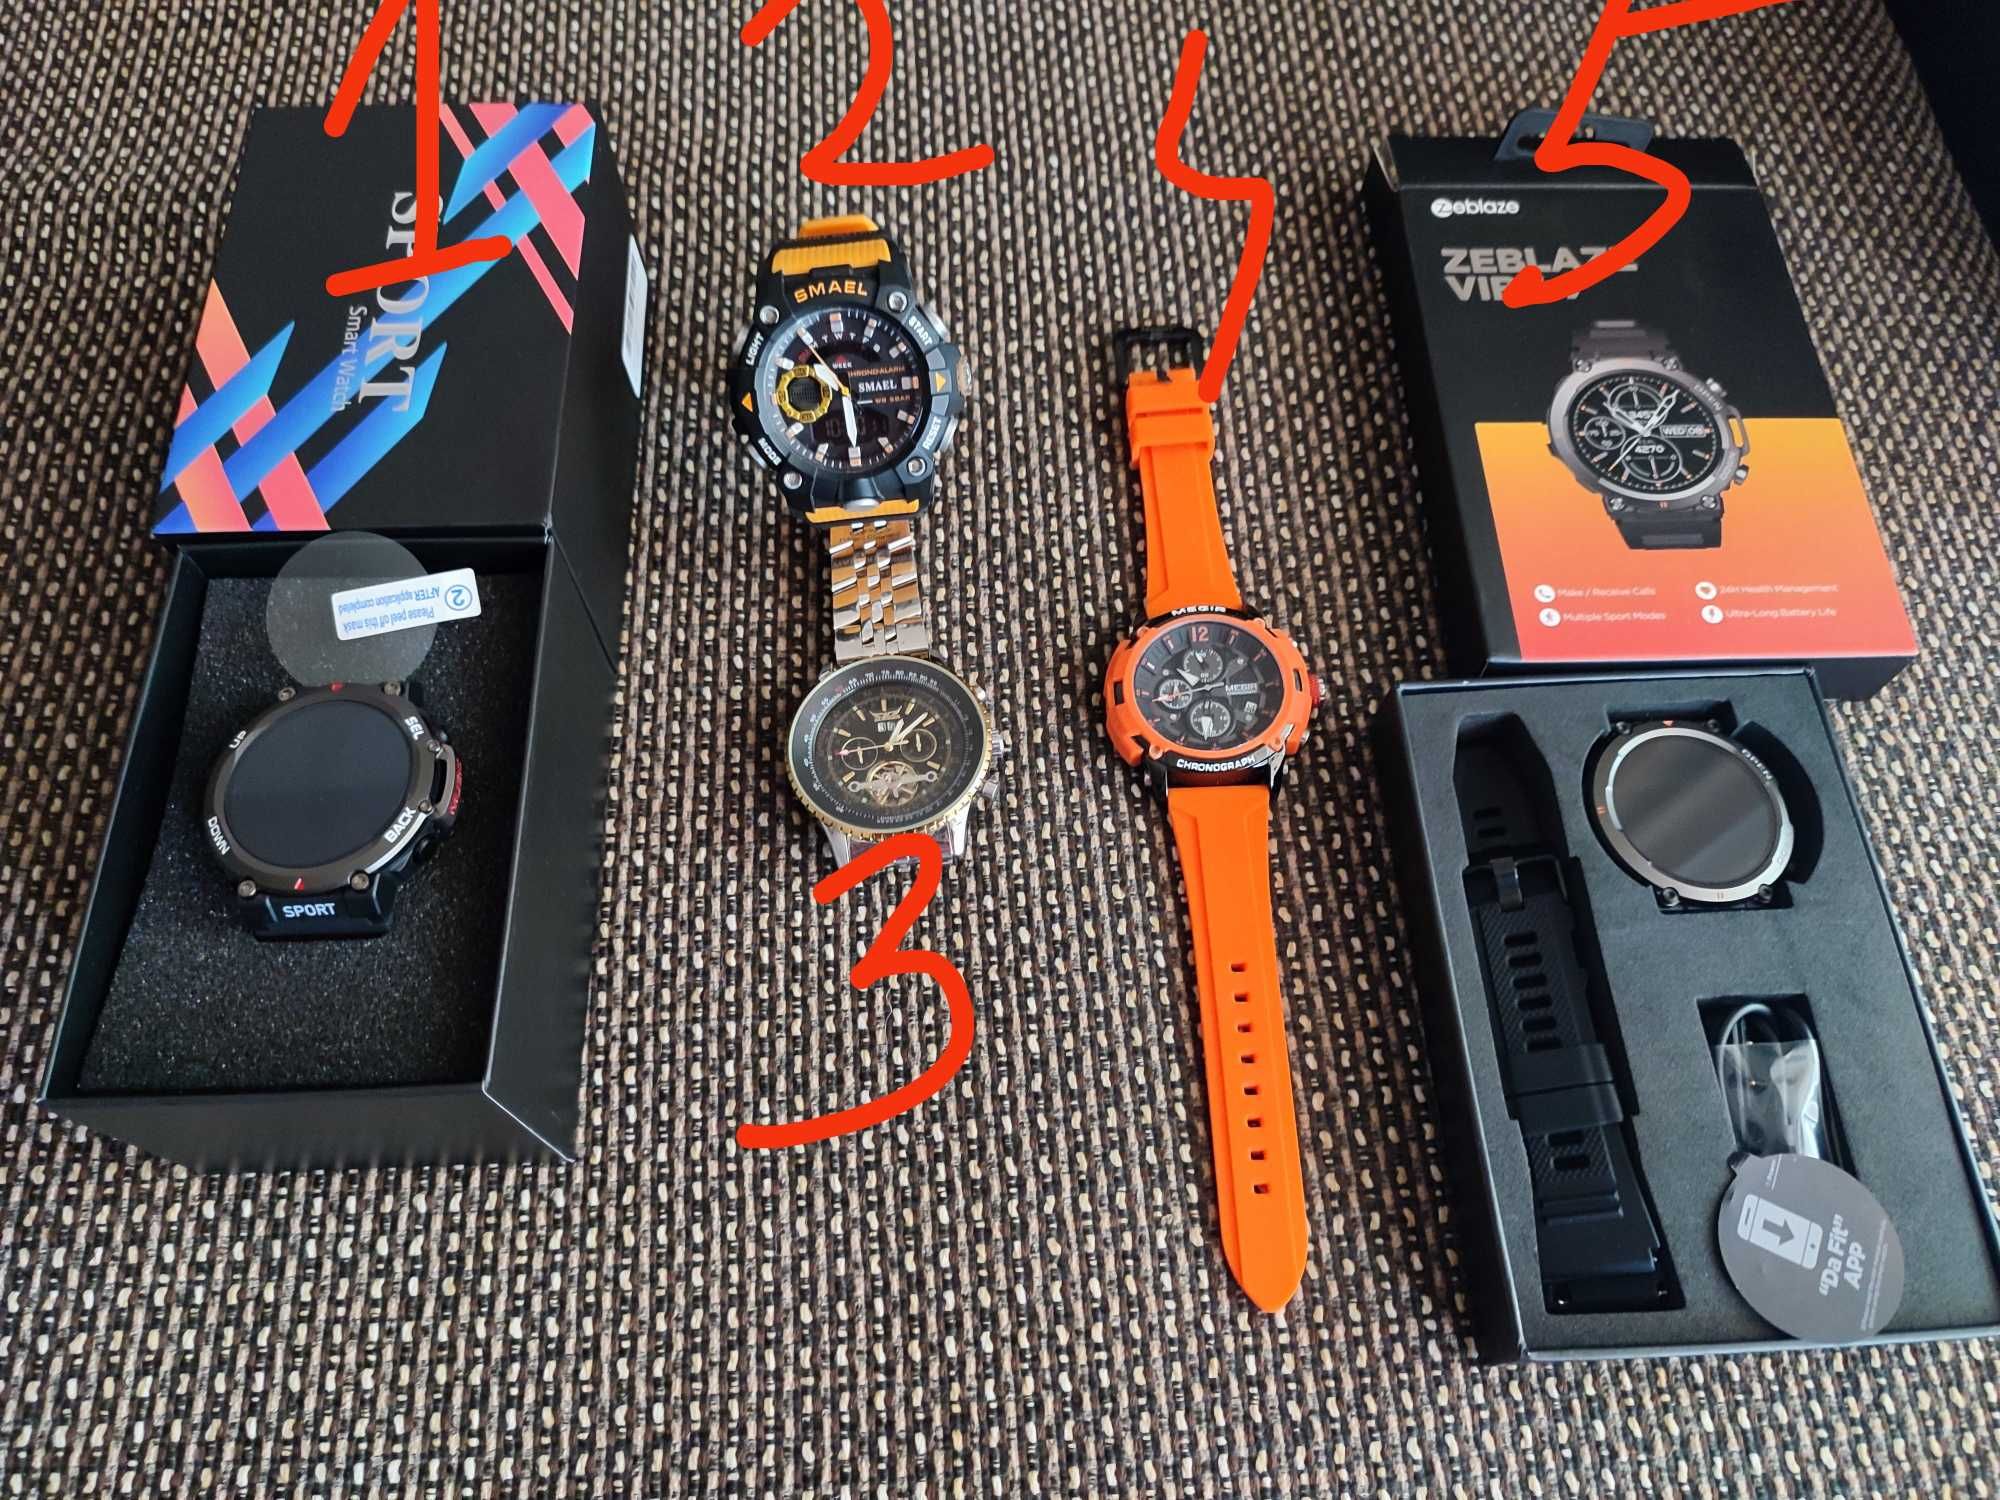 Ceasuri din colecția personală